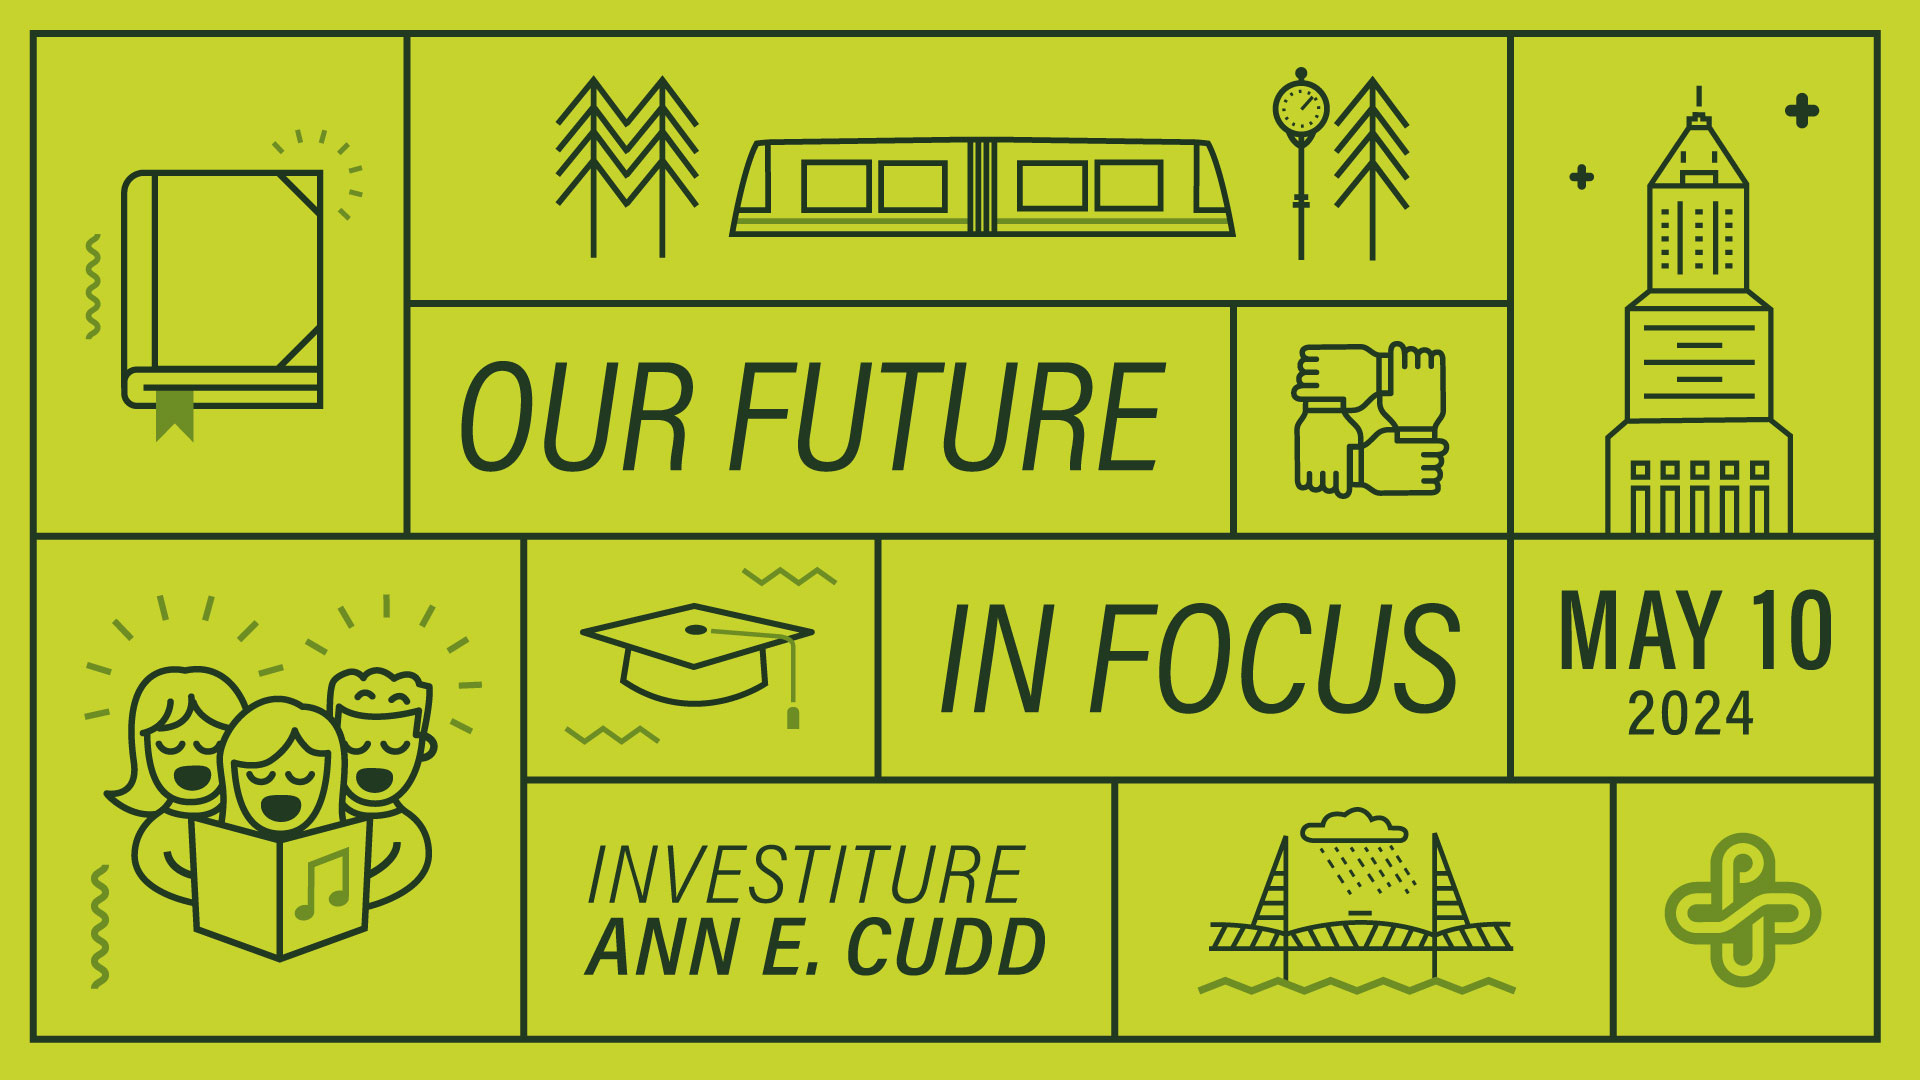 Our Future in Focus — Investiture Ann E. Cudd